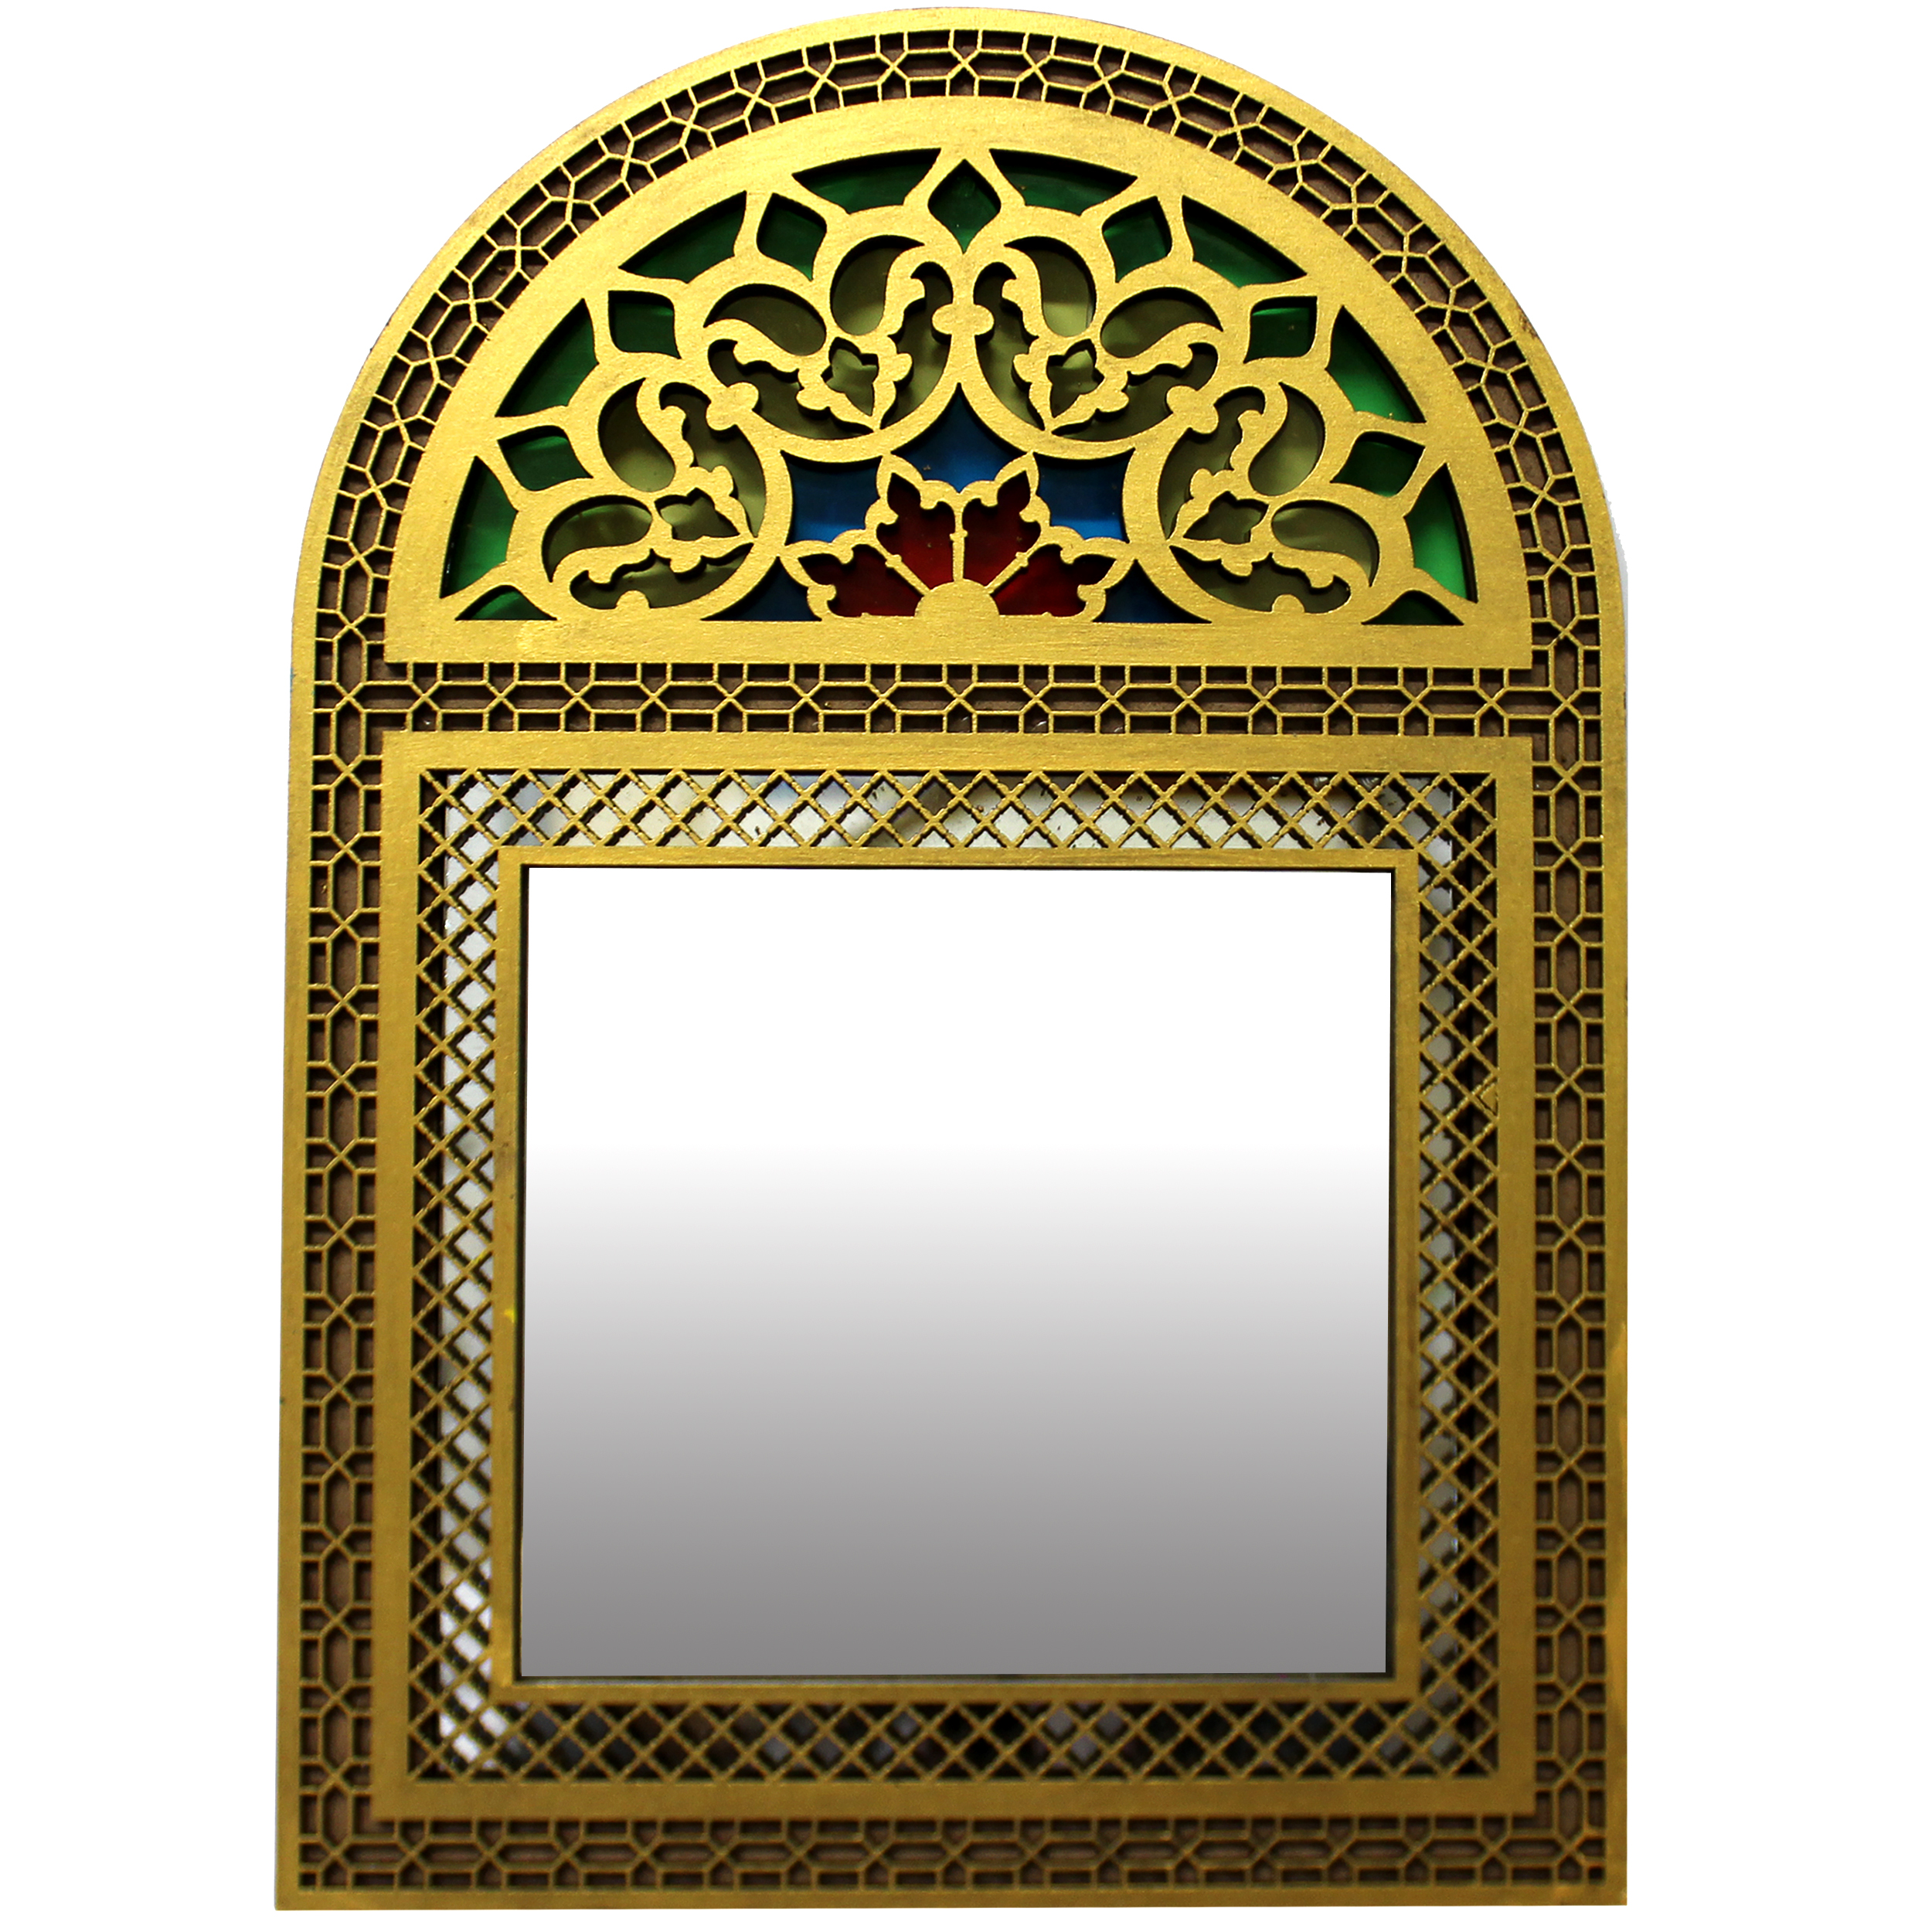 آینه دست نگار طرح پنجره سنتی کد 01-20